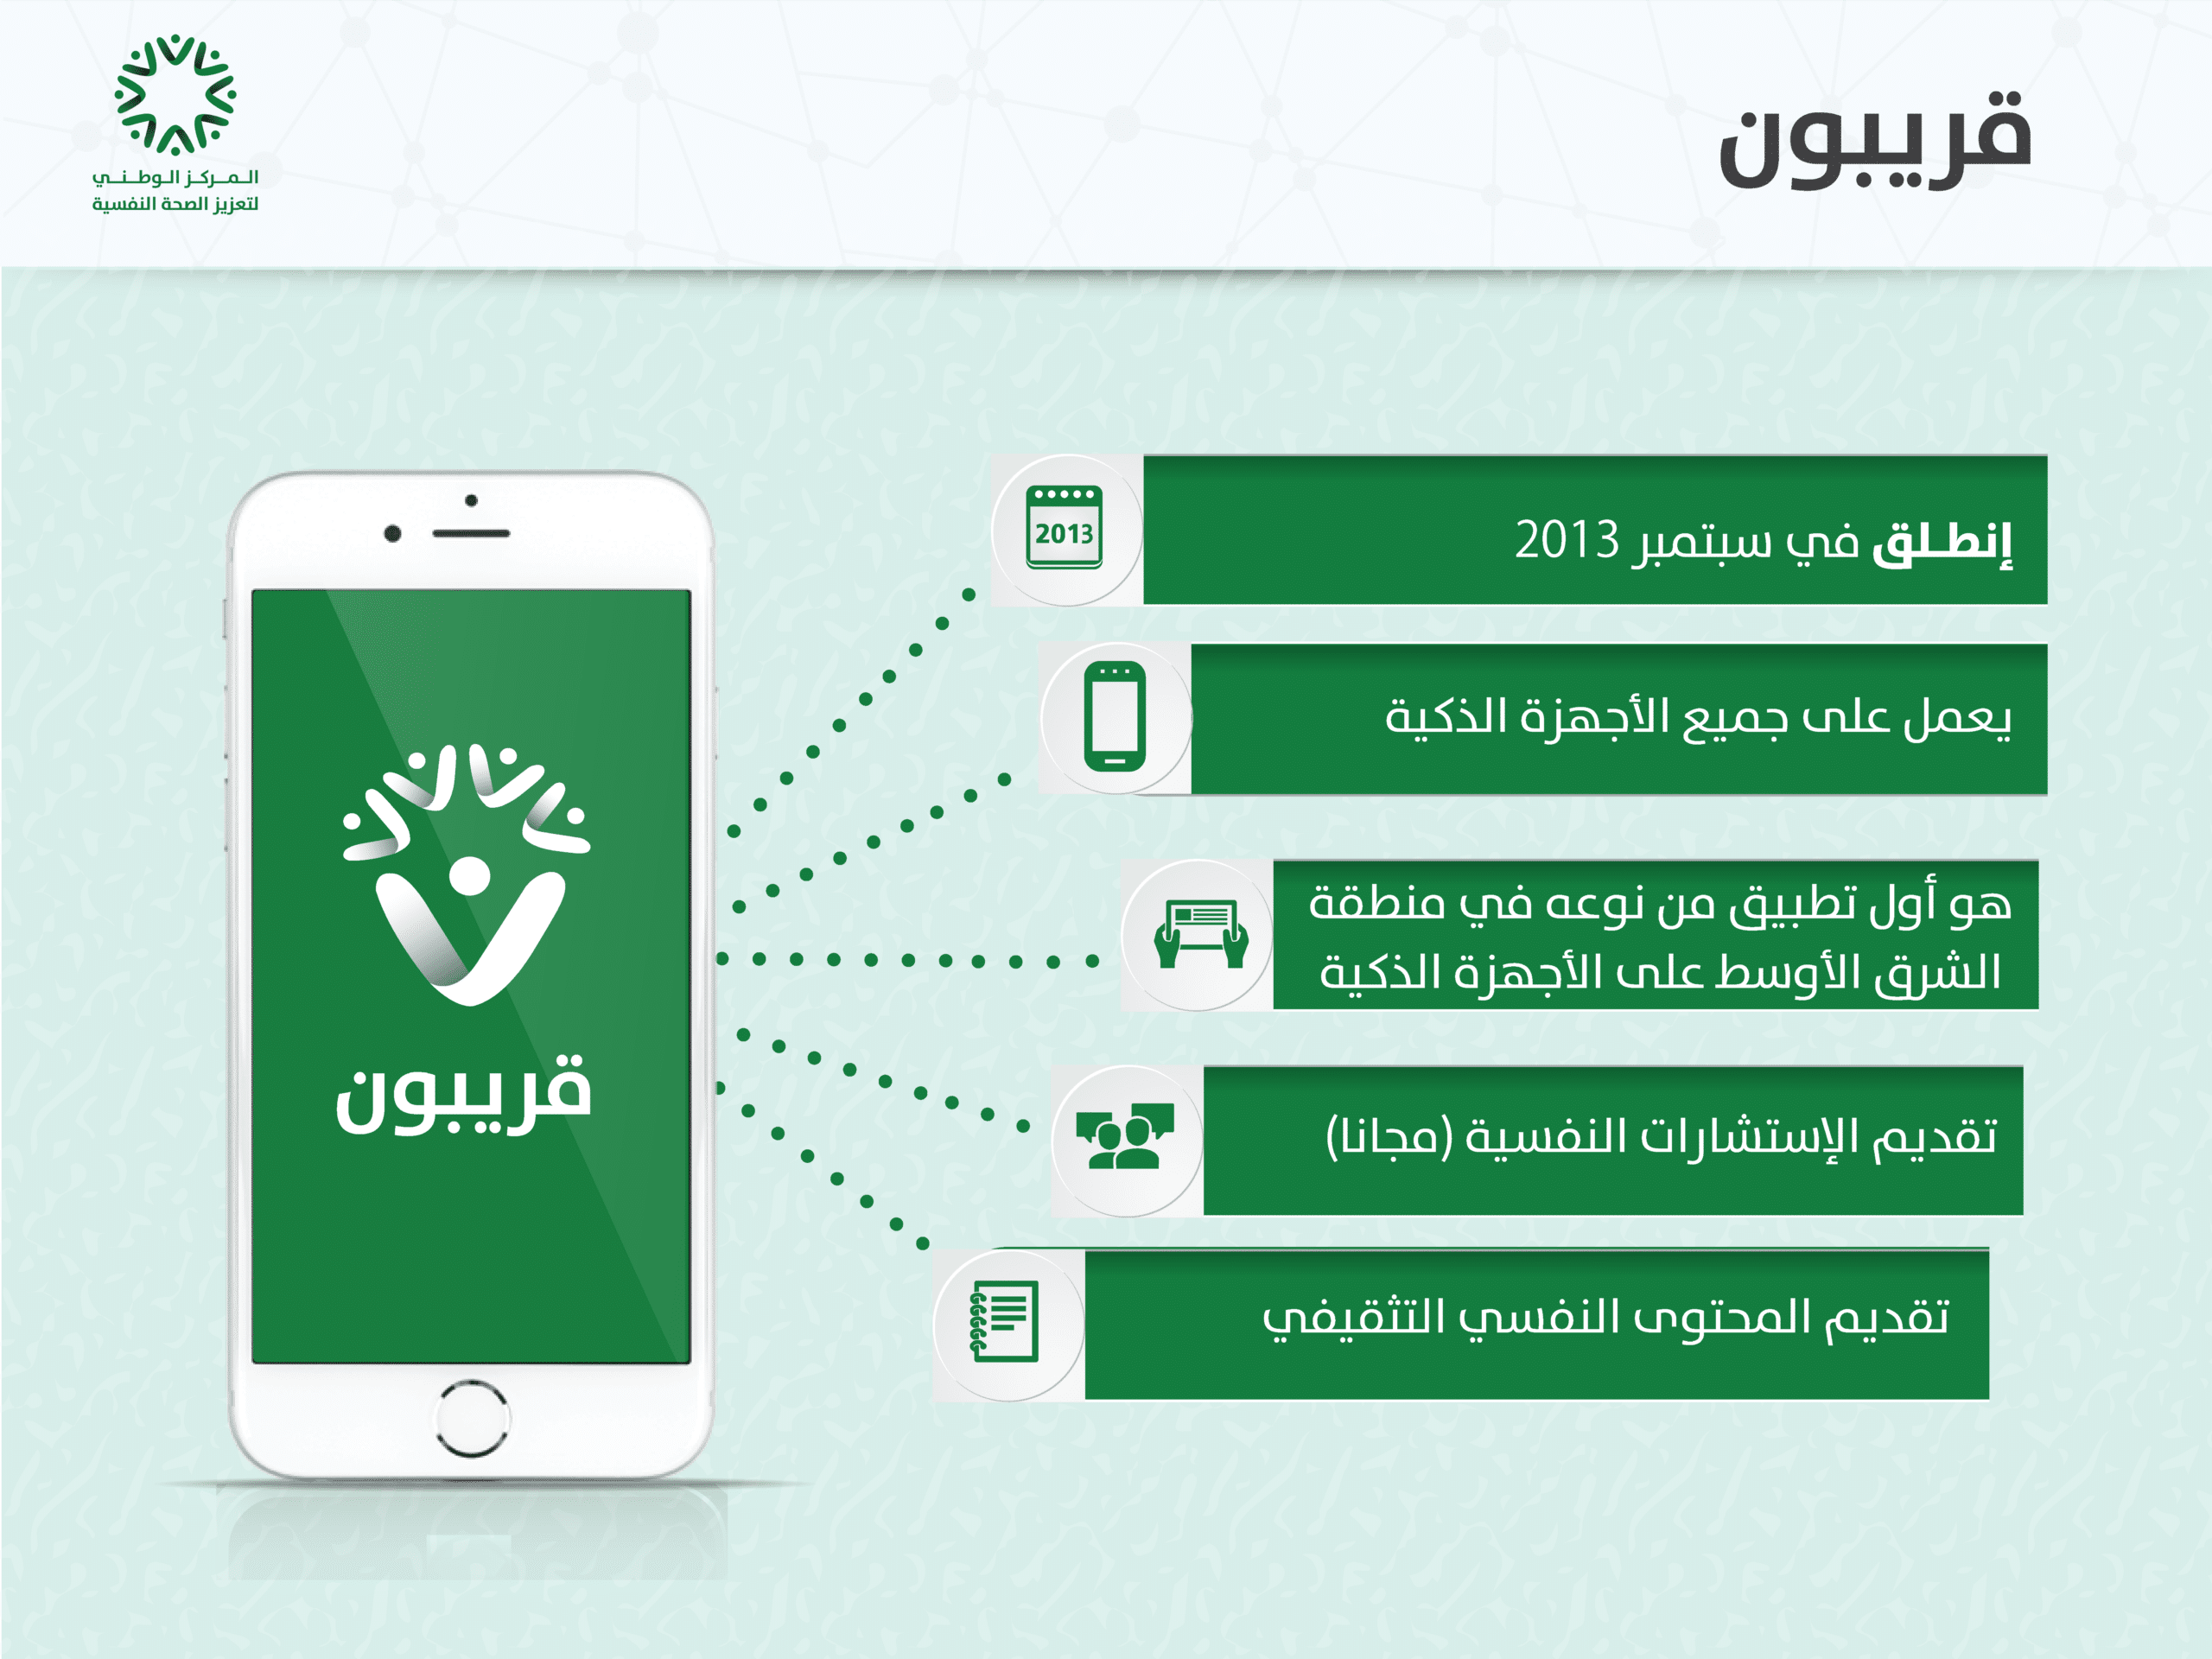  تطبيق قريبون أول خدمة رقمية لدعم الصحة النفسية بالسعودية